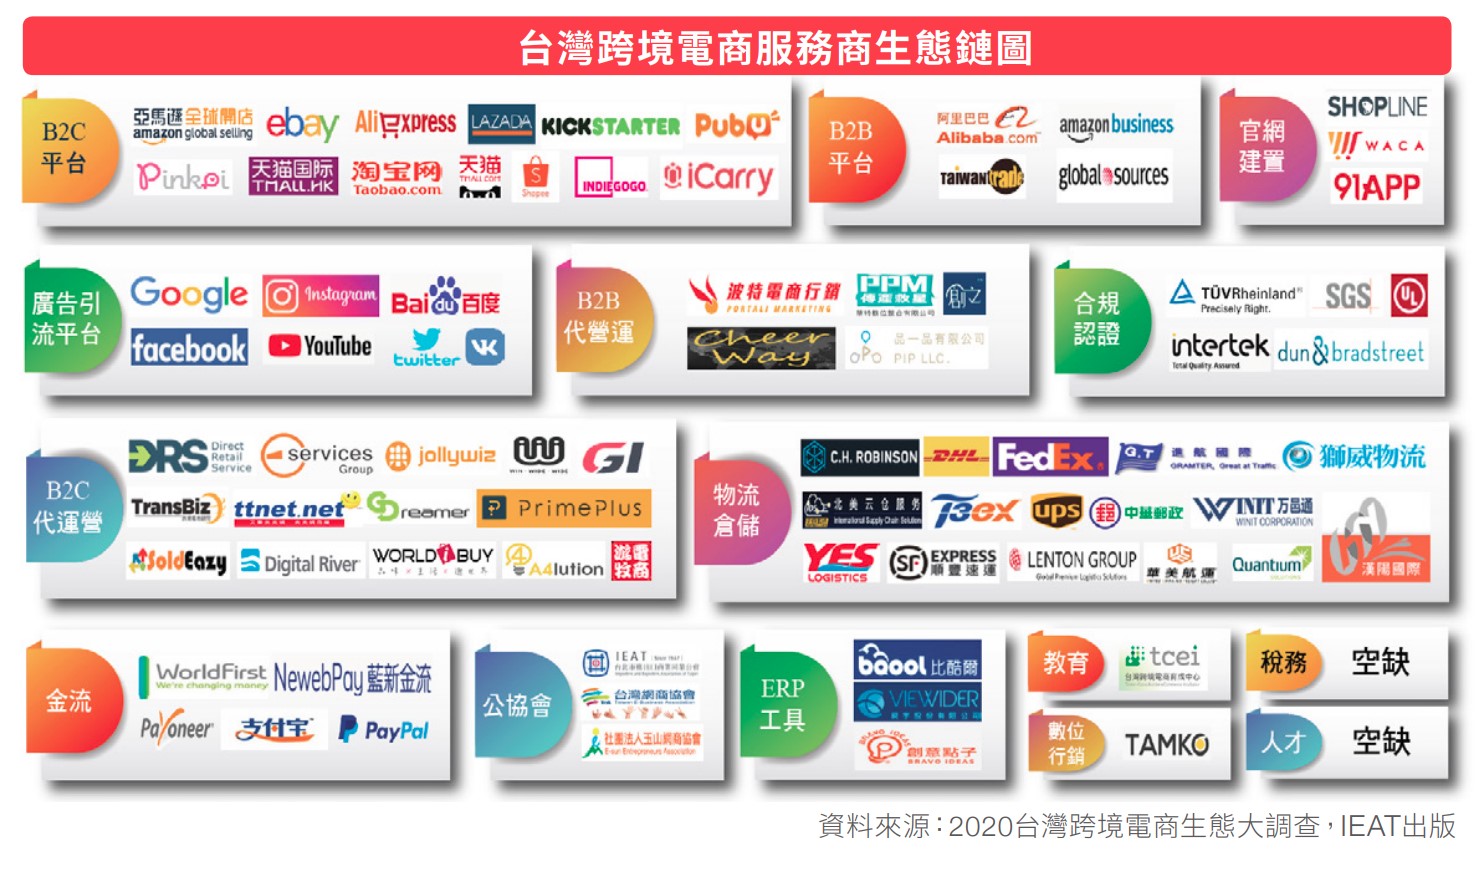 台灣跨境電商服務商生態鏈圖